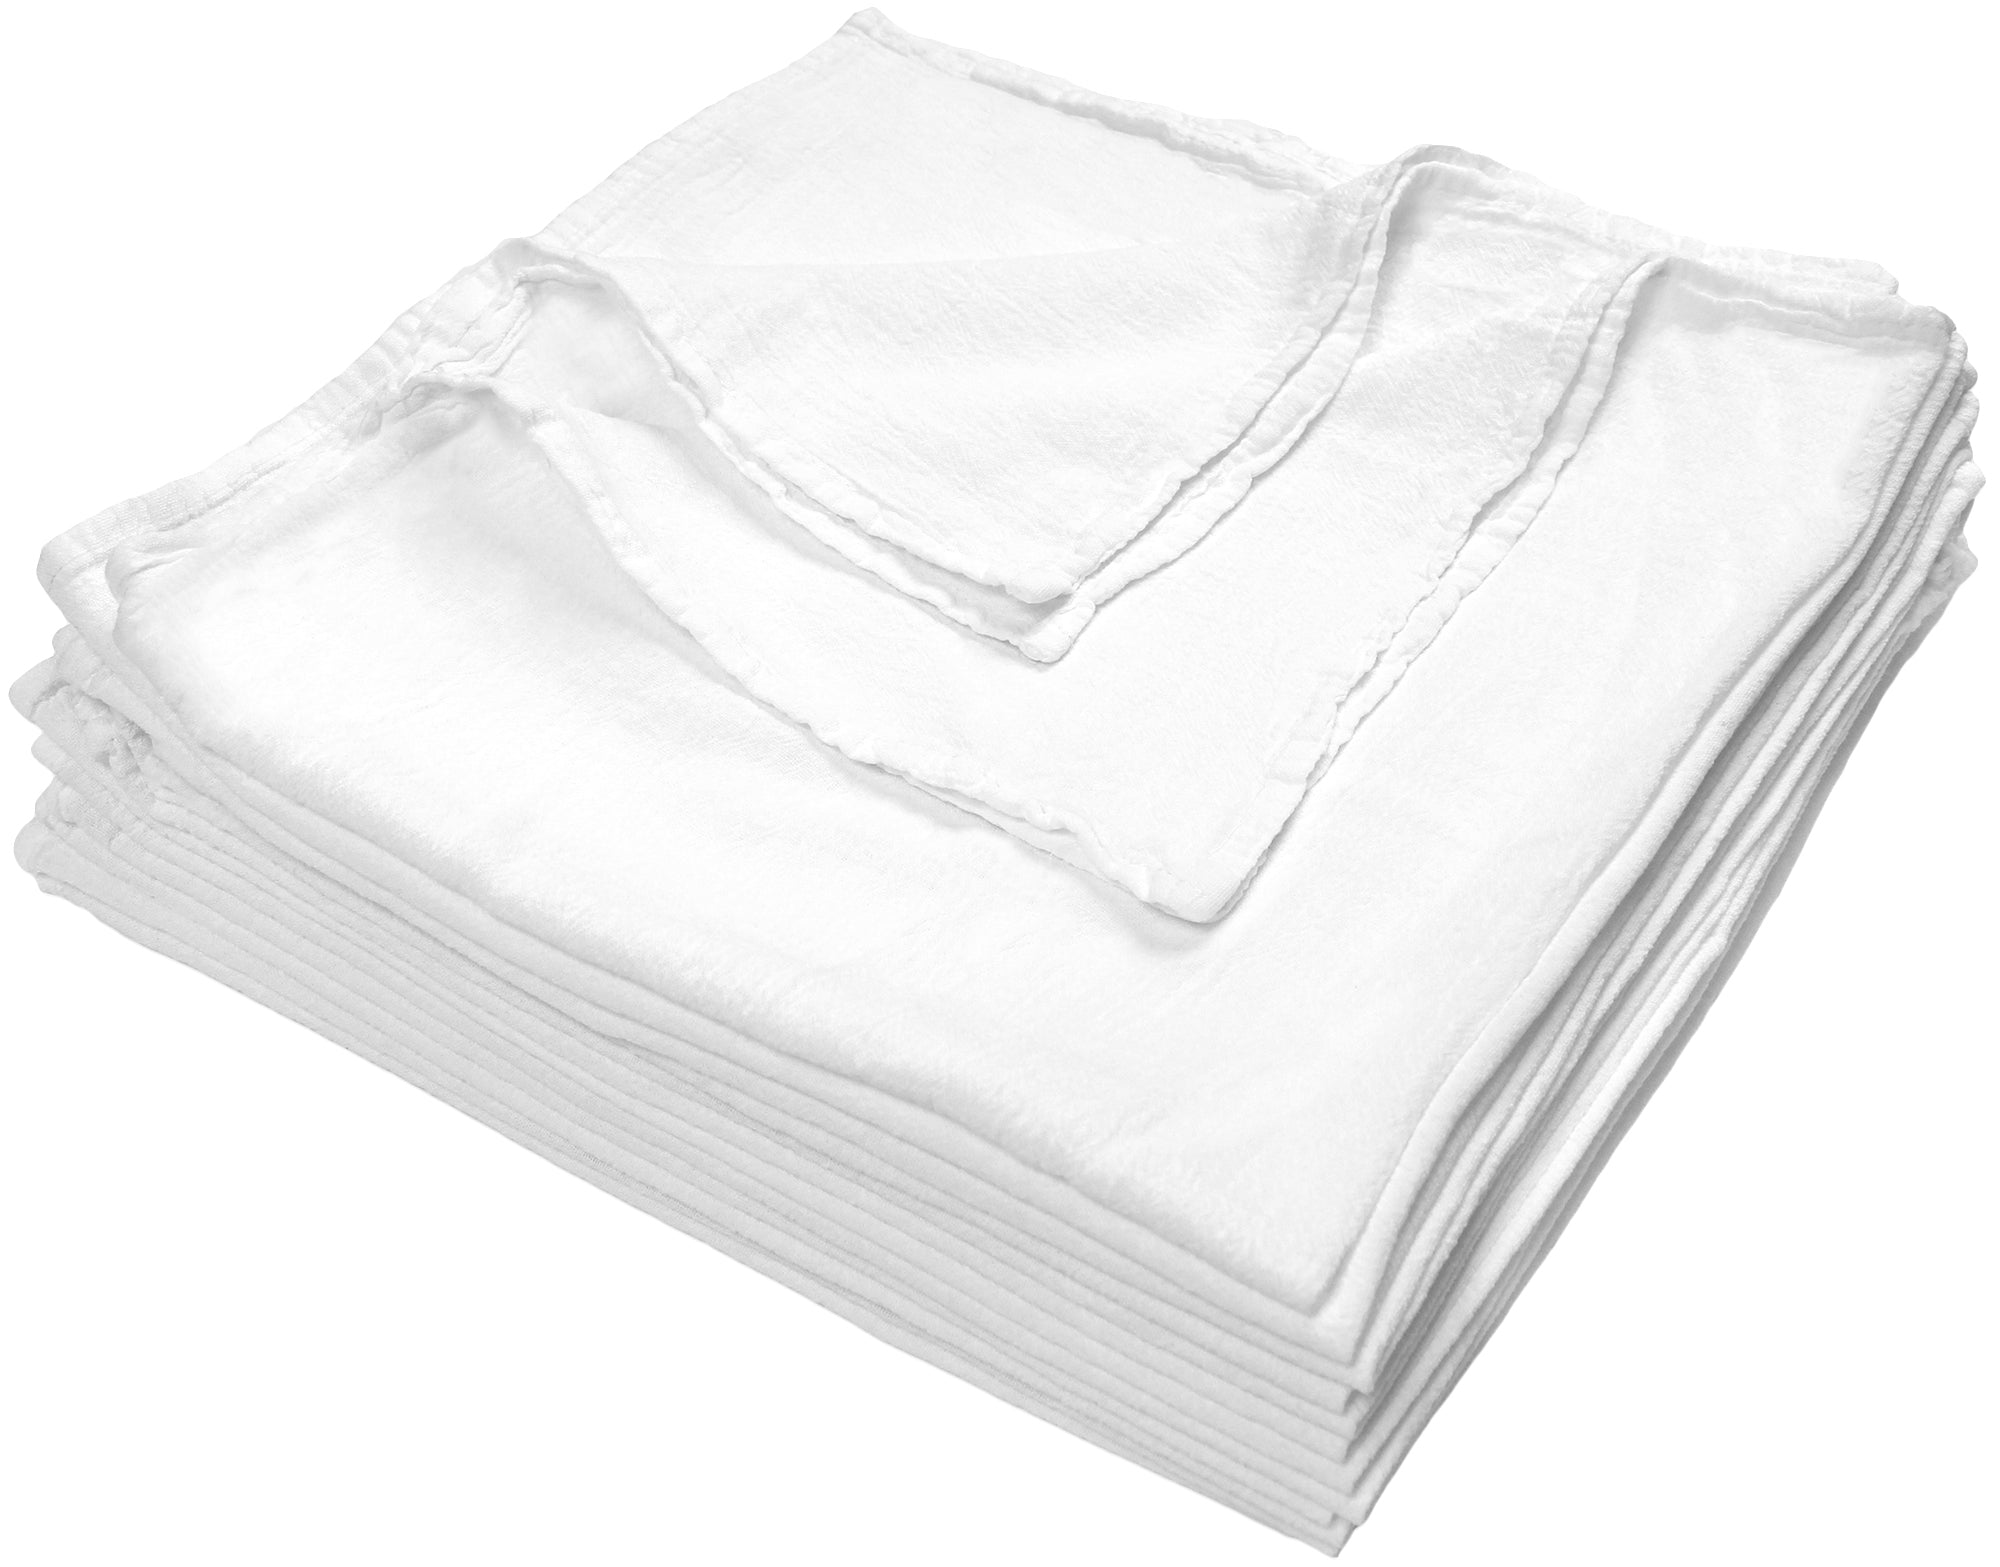 Flour Sack Dish Towels 12 Pack, 28 X 28 - Flour Sack Kitchen Towels -  Cotton Dish Towels - White Dish Towels Flour Sack - White Flour Sack Towels  Bulk